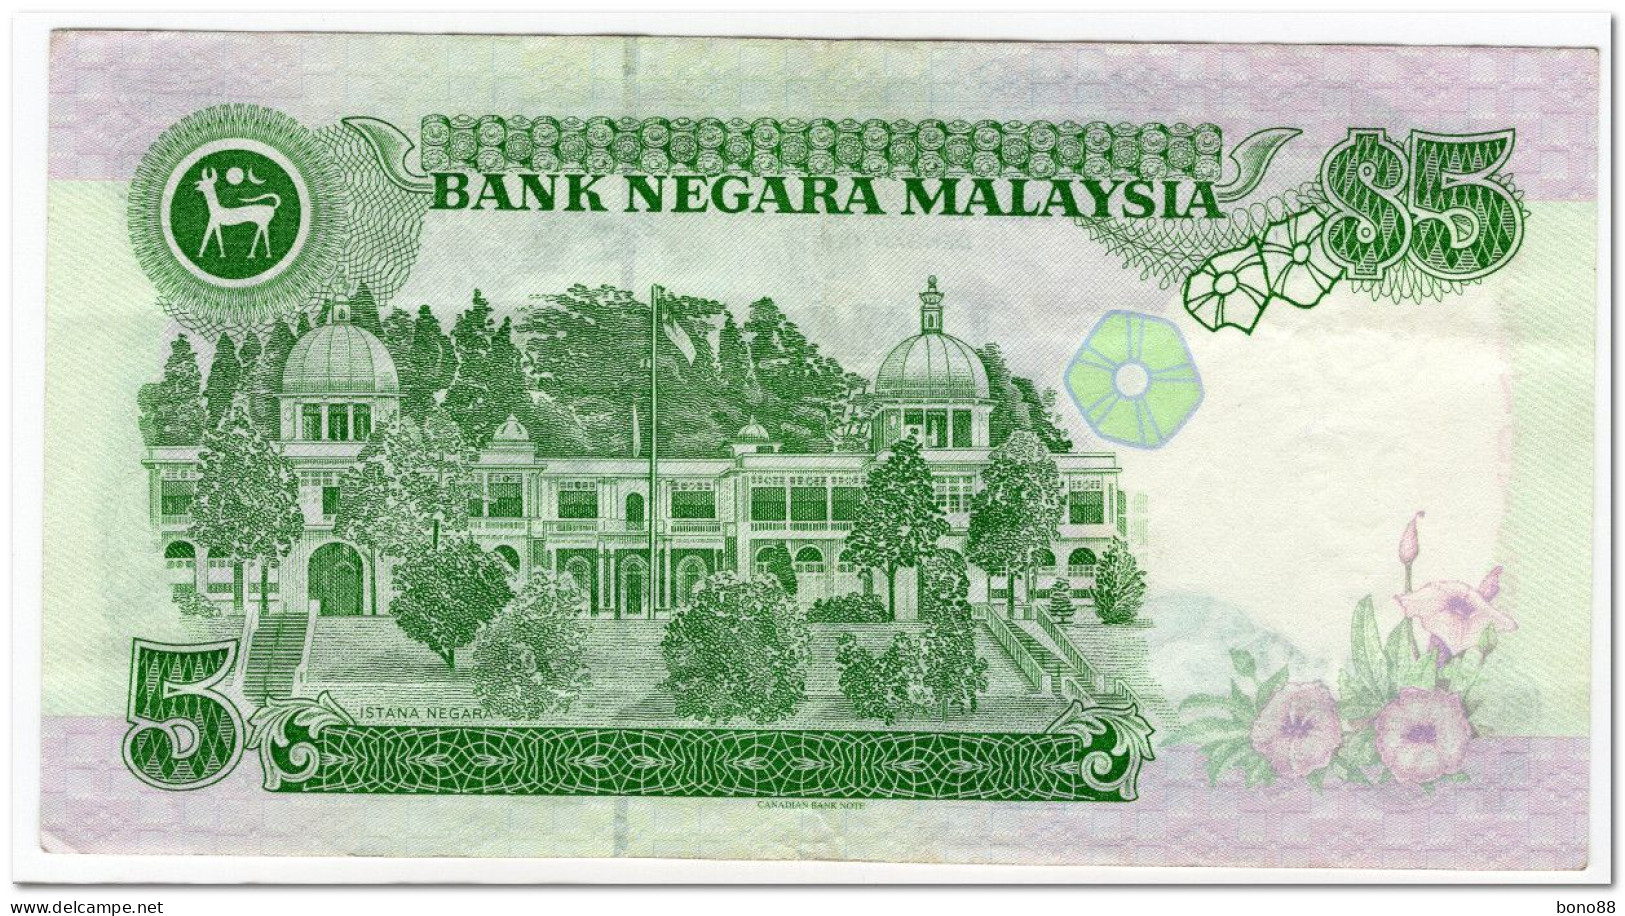 MALAYSIA,5 RINGGIT,1995,P.35,VF+ - Malesia